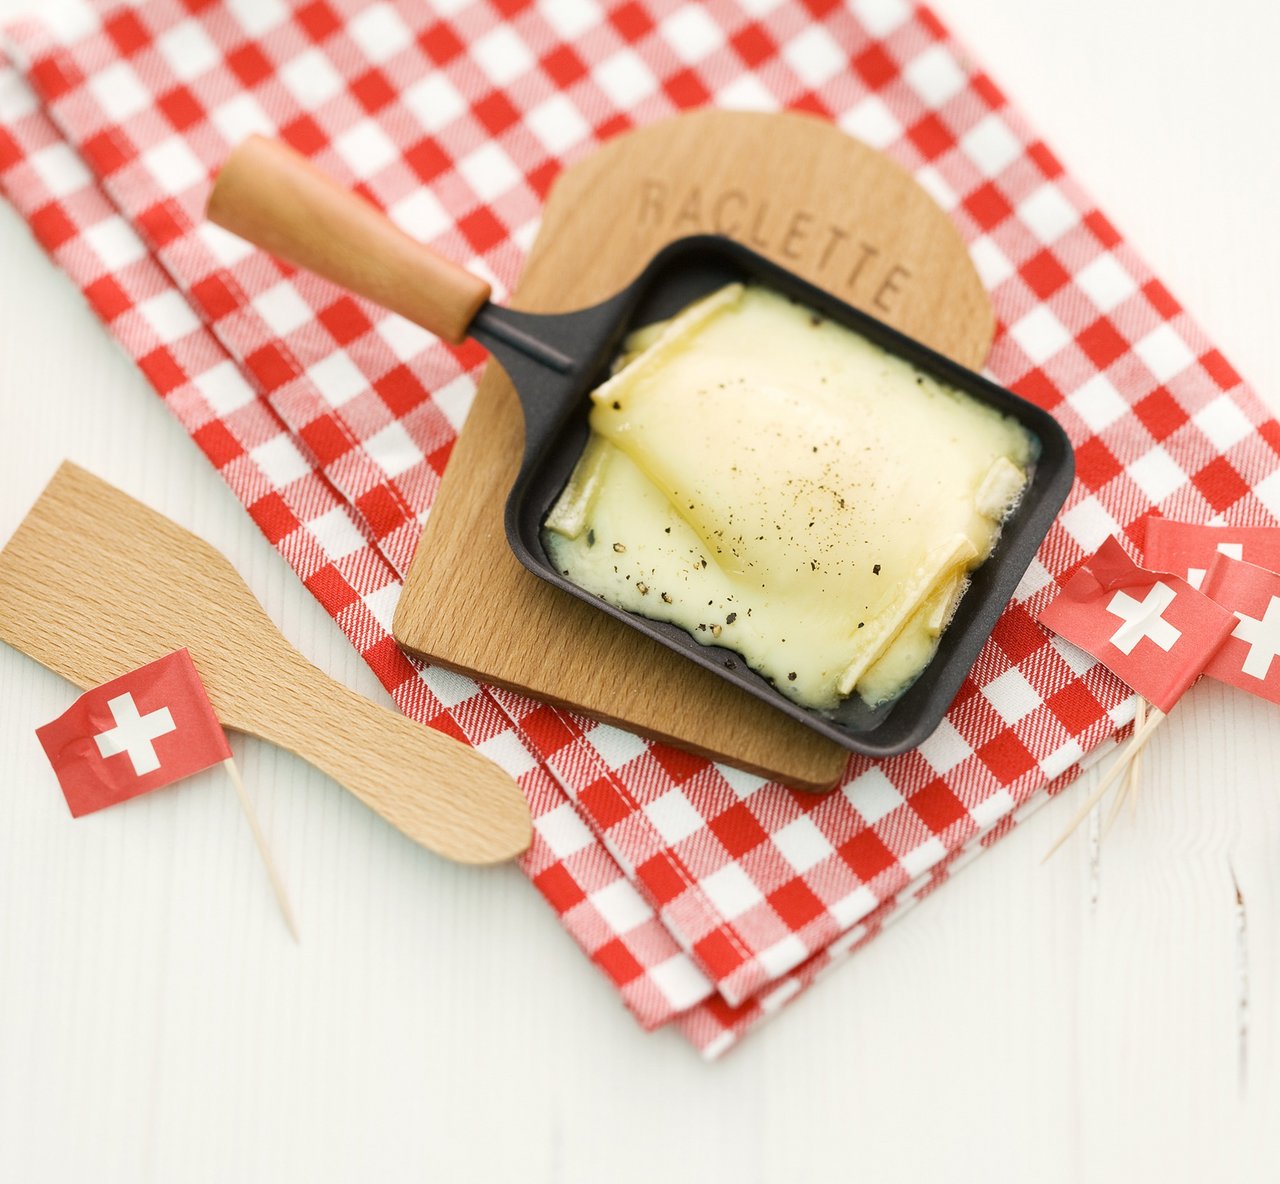 Konsument(innen) in der Schweiz haben im letzten Jahr 8844 Tonnen Raclette gegessen. (Bild Raclette Suisse)